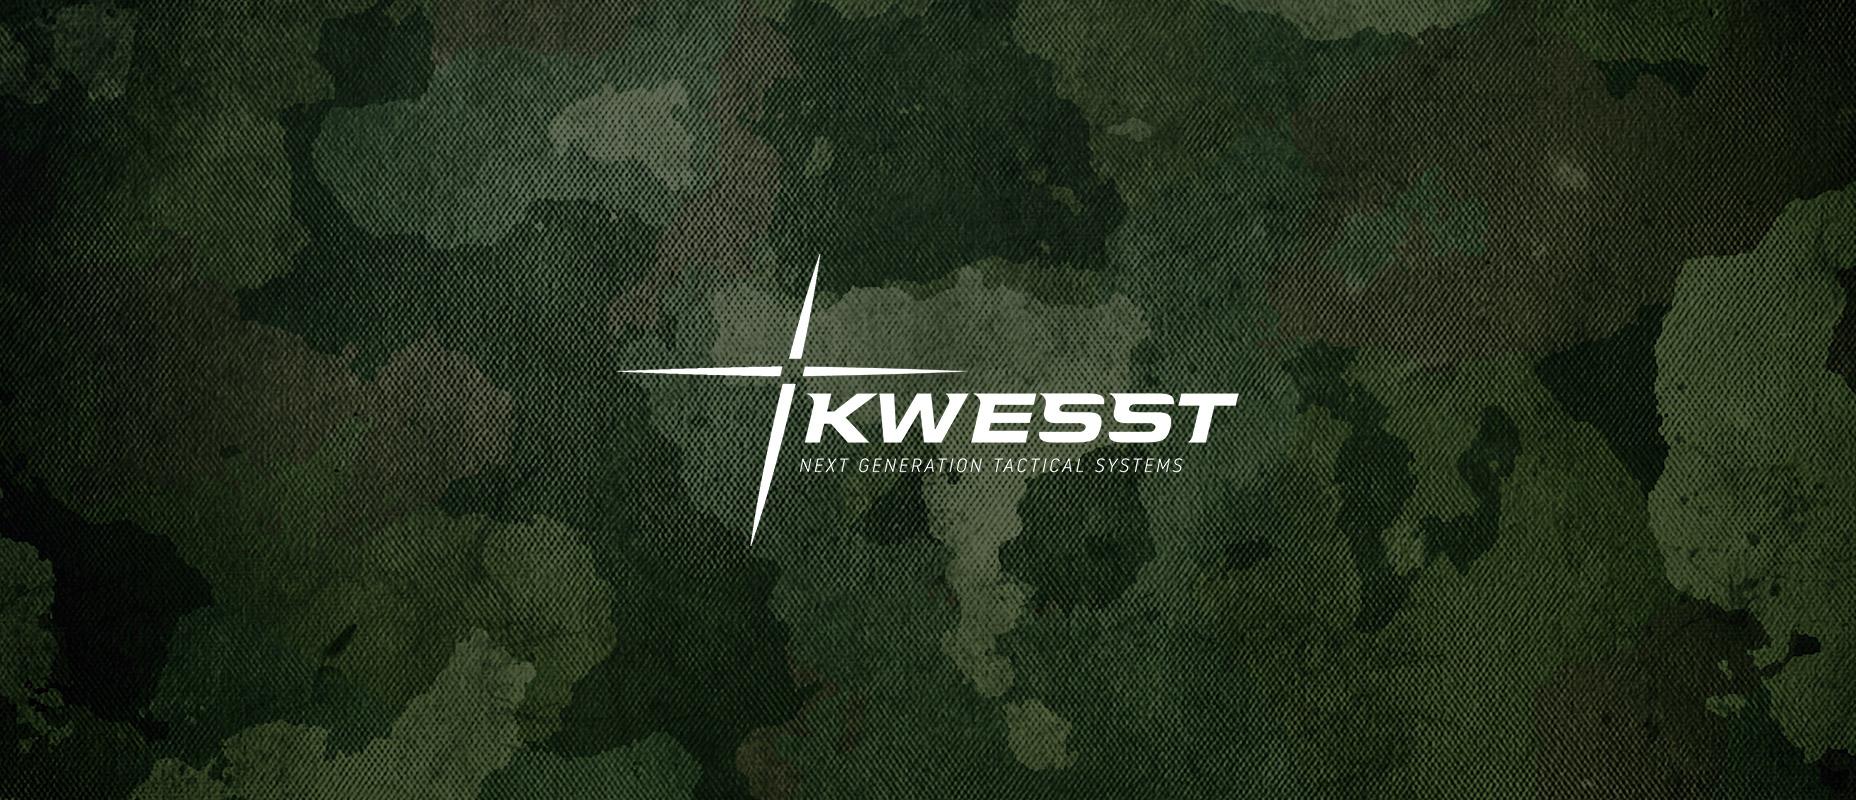 Nhà sản xuất hệ thống chiến thuật thế hệ tiếp theo KWESST Micro Systems Inc đệ trình IPO